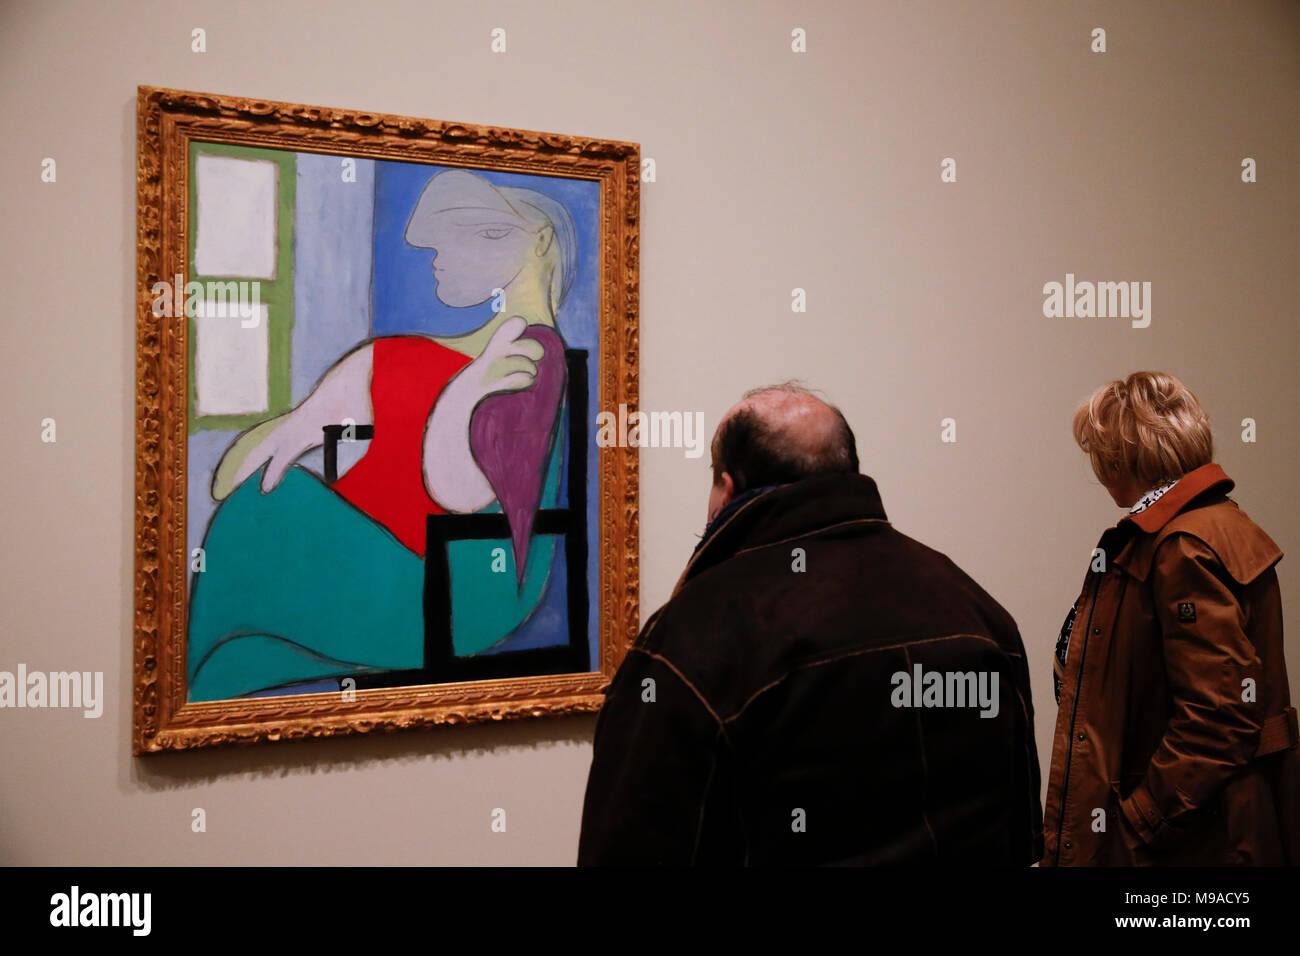 London, Londra, Regno Unito. 24 Mar, 2018. La gente visita " EY mostra Picasso 1932 - amore, fama, tragedia" svoltasi a Tate Modern, Londra, Gran Bretagna il 24 marzo 2018. La mostra chiuderà il 7 settembre 9. Credito: Han Yan/Xinhua/Alamy Live News Foto Stock